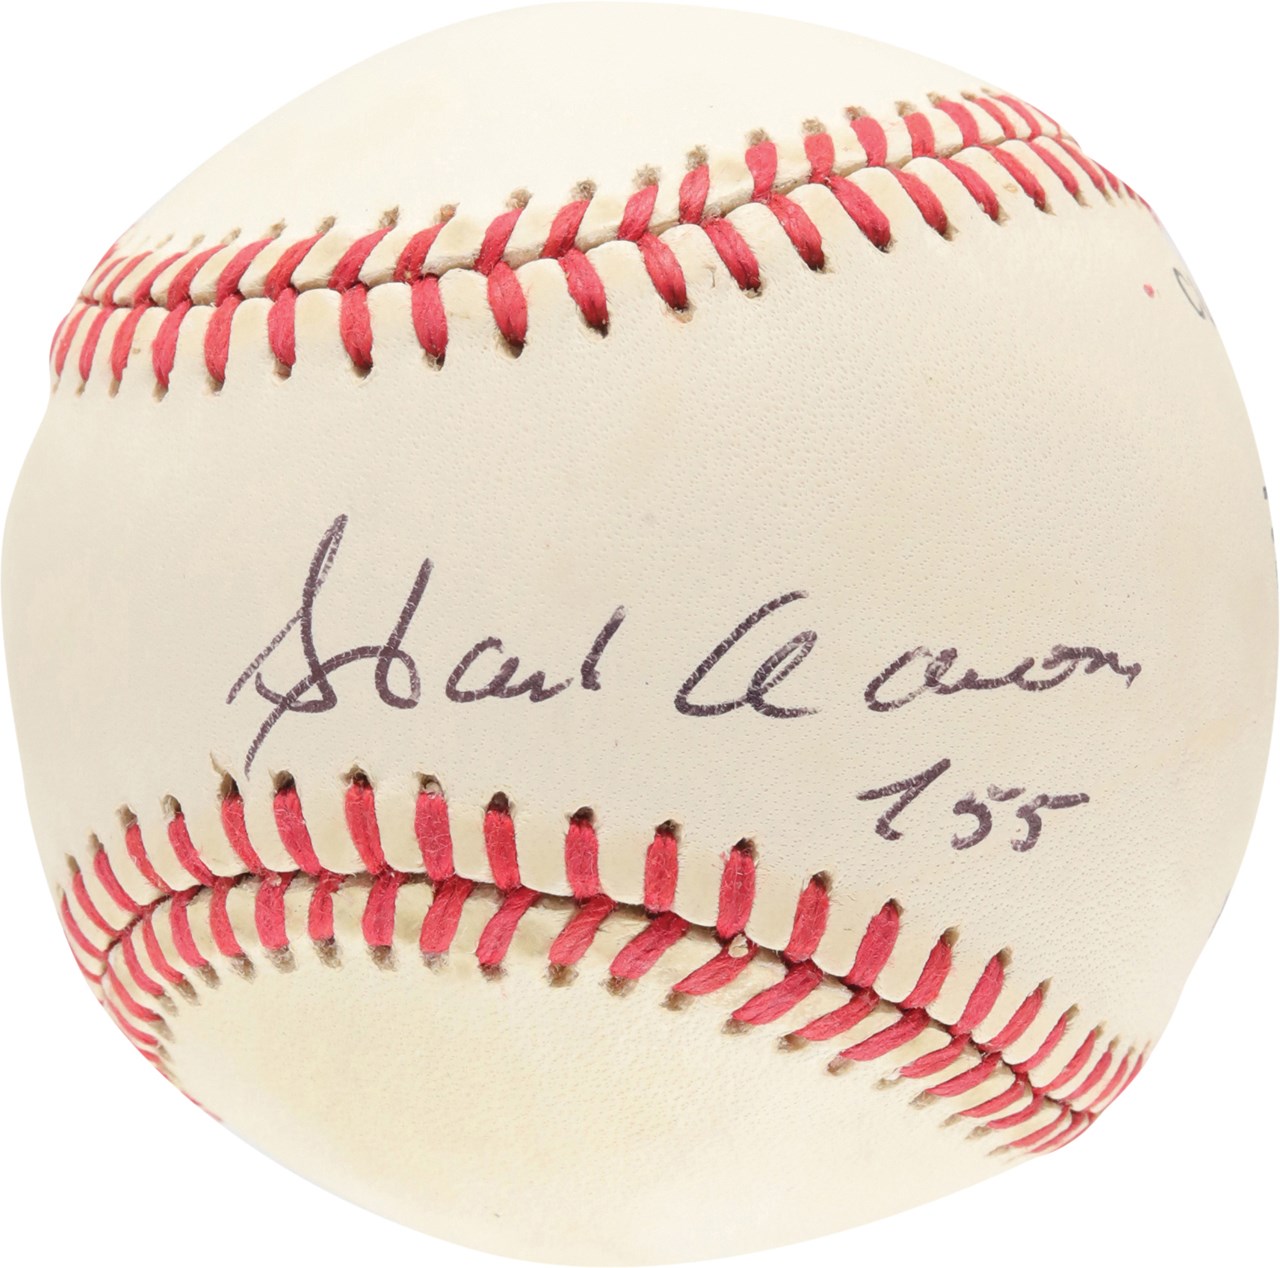 Baseball Autographs - Hank Aaron "755" Single Signed Baseball (JSA)